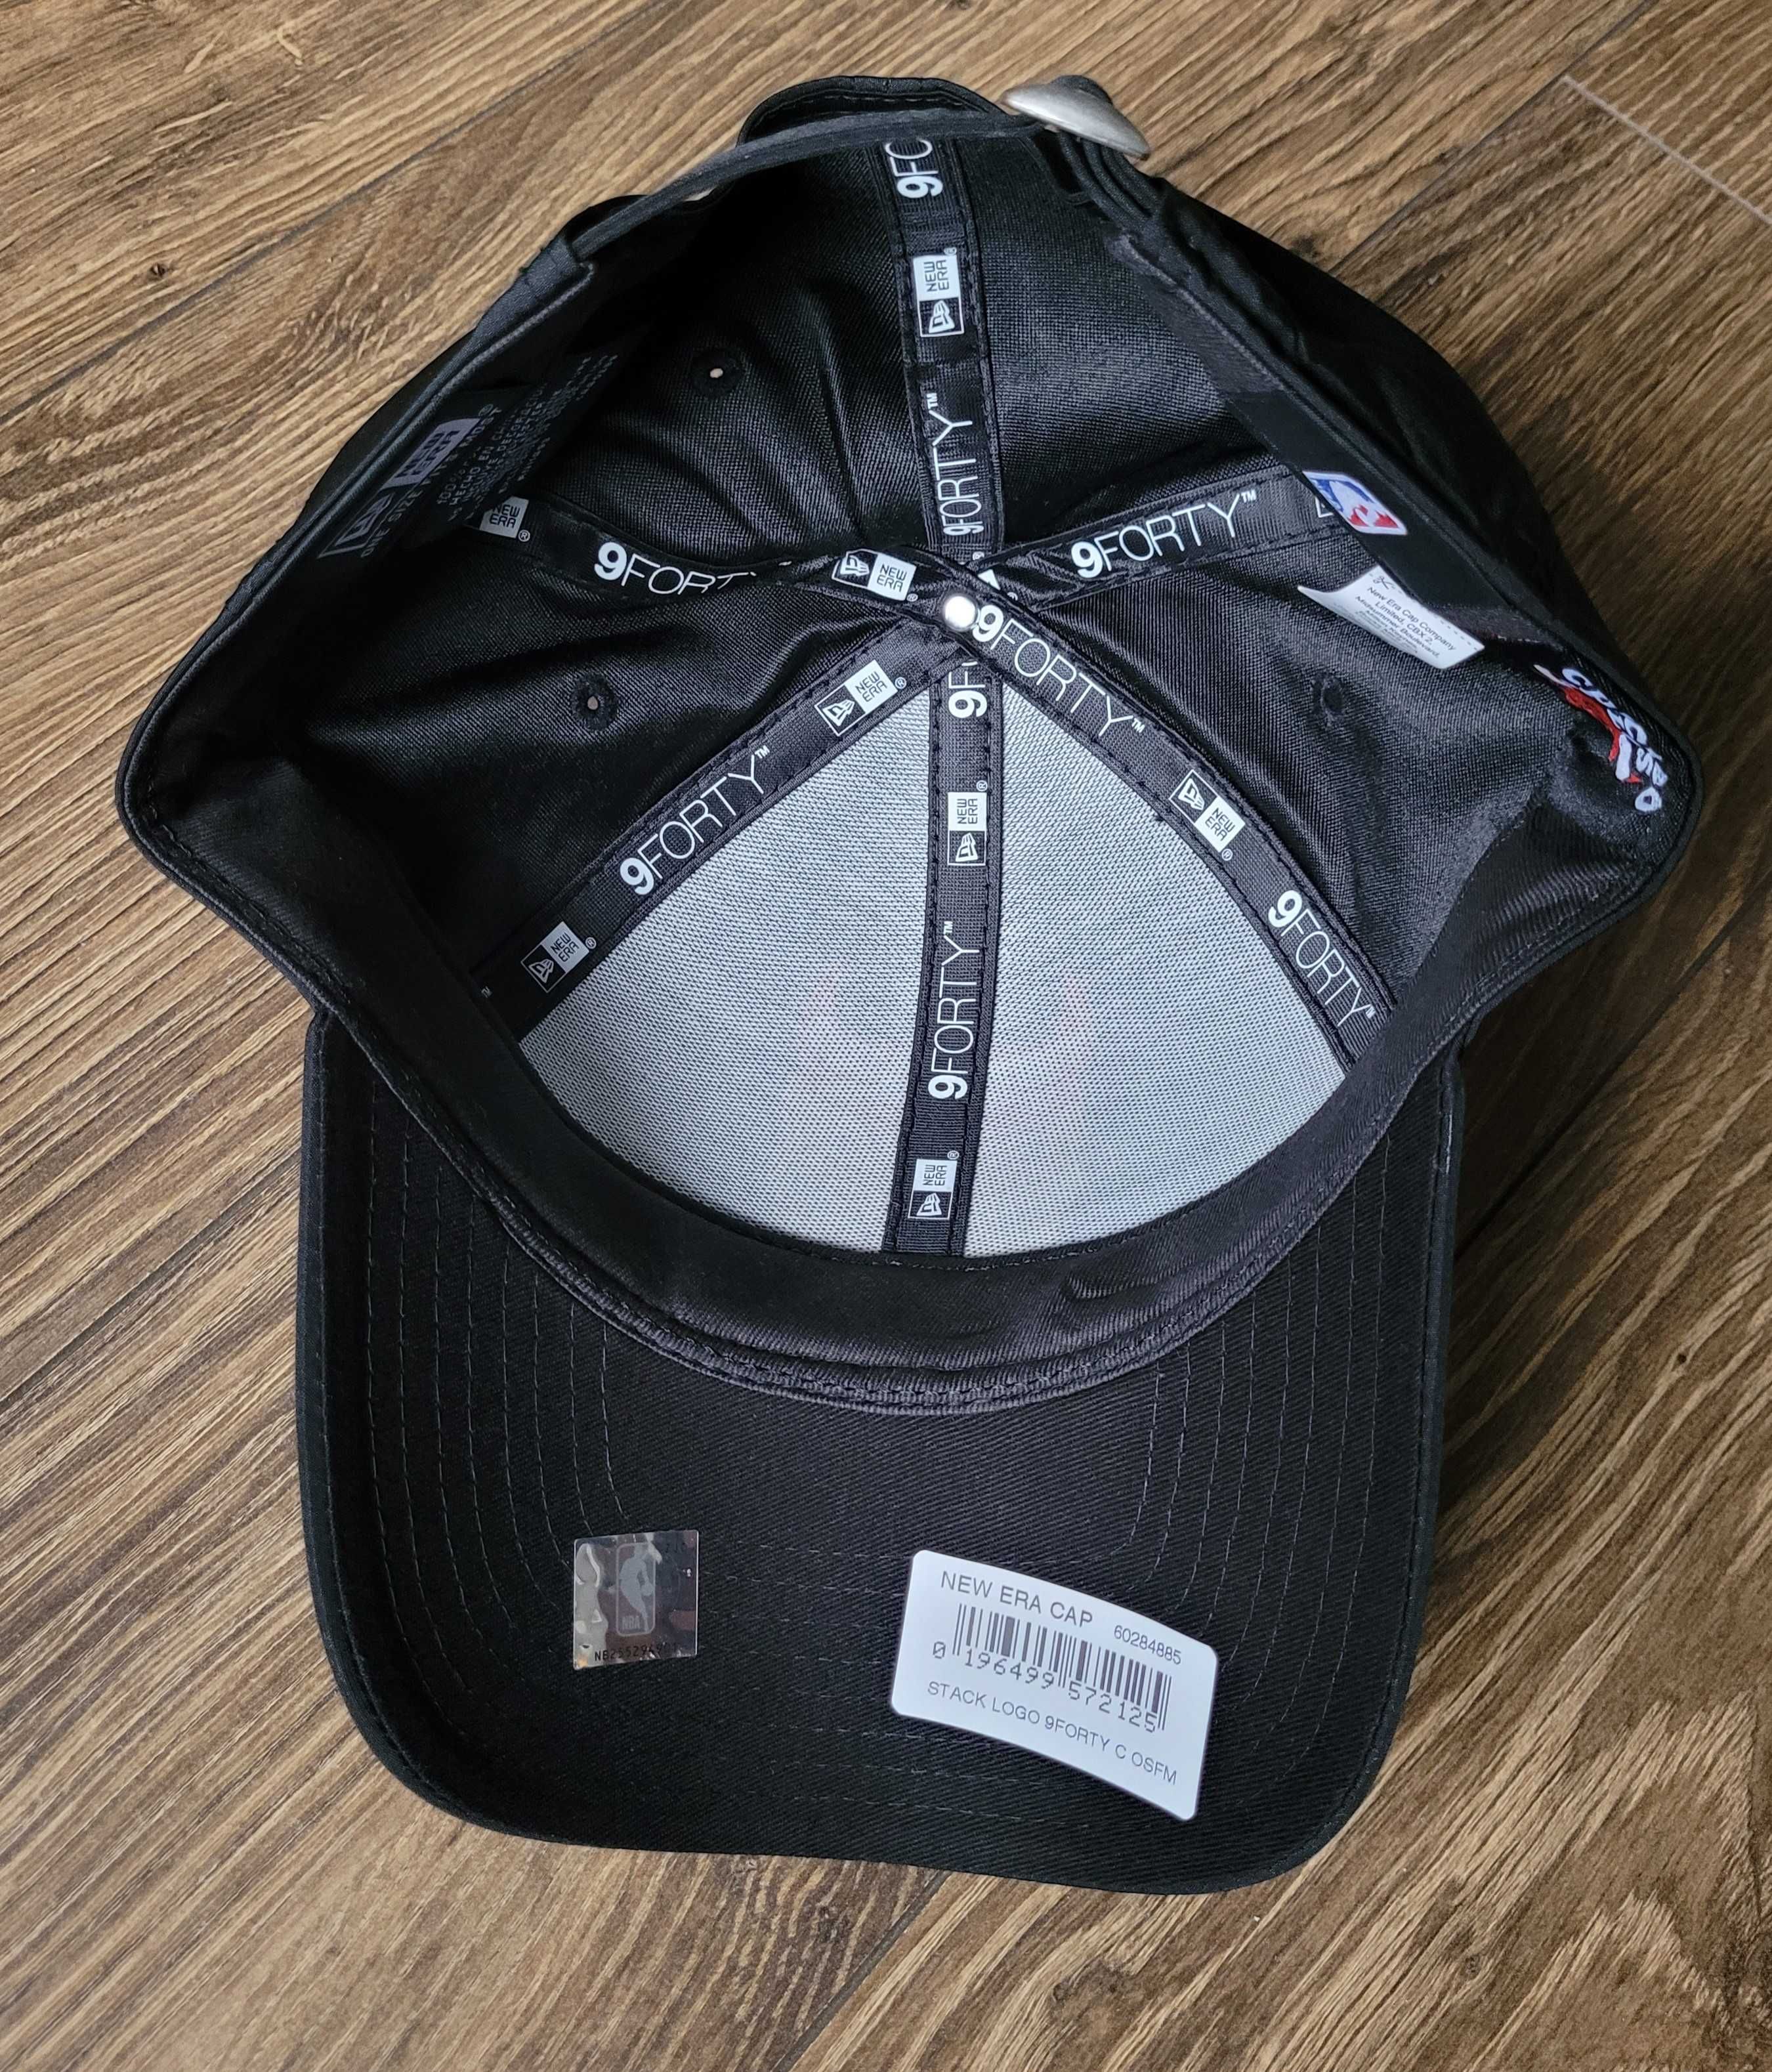 czapka z daszkiem New Era 9Forty Chicago Bulls NBA czarna logo NOWA